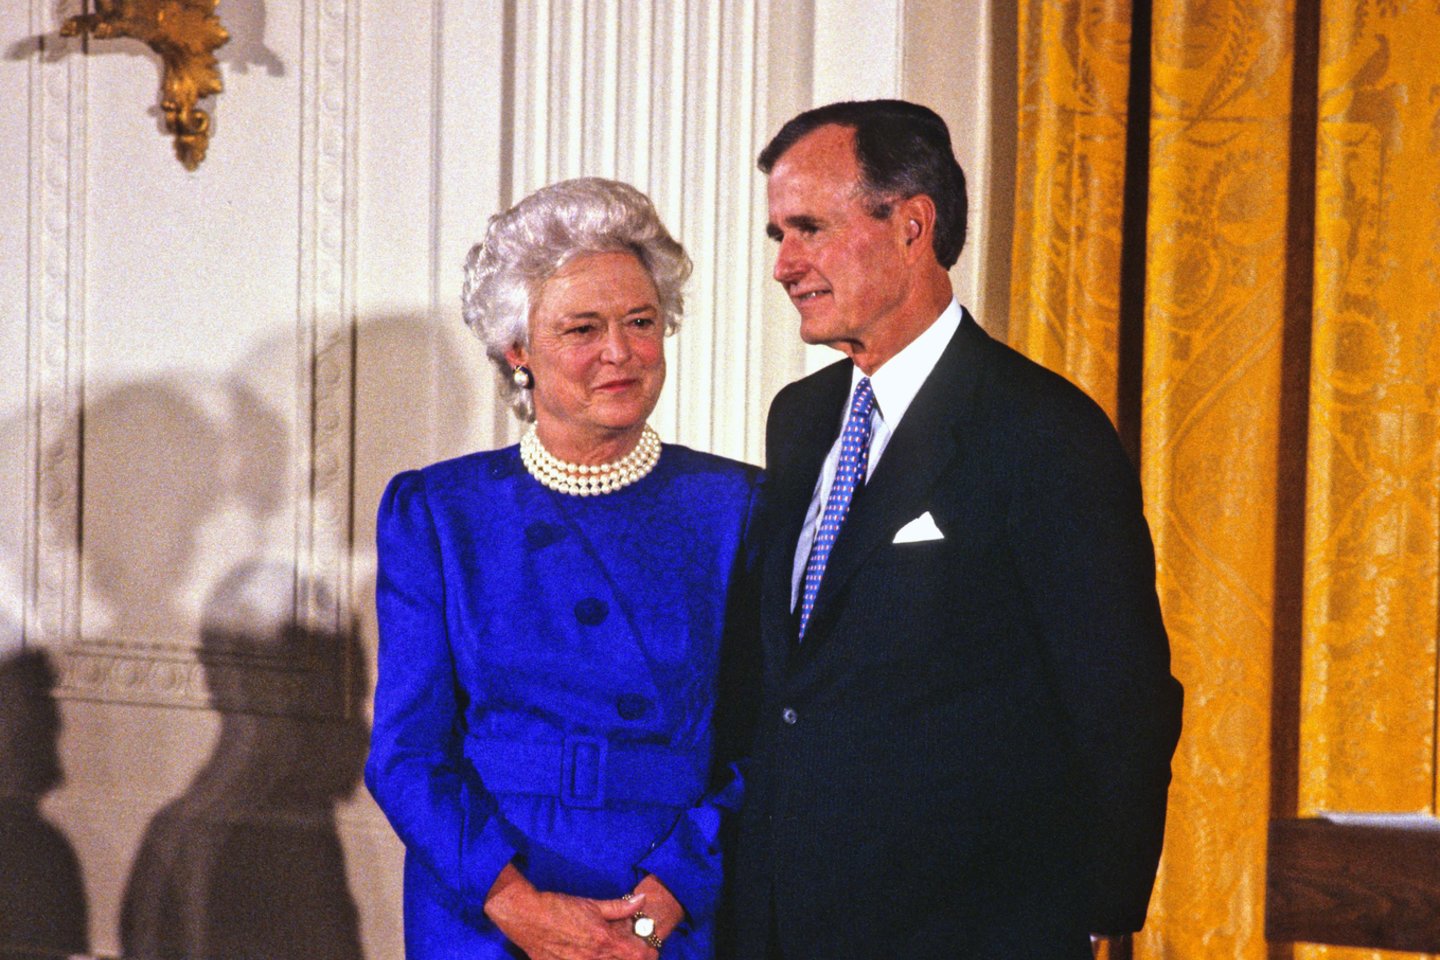  Buvęs JAV prezidentas George'as H. W. Bushas ir jo žmona Barbara Bush.